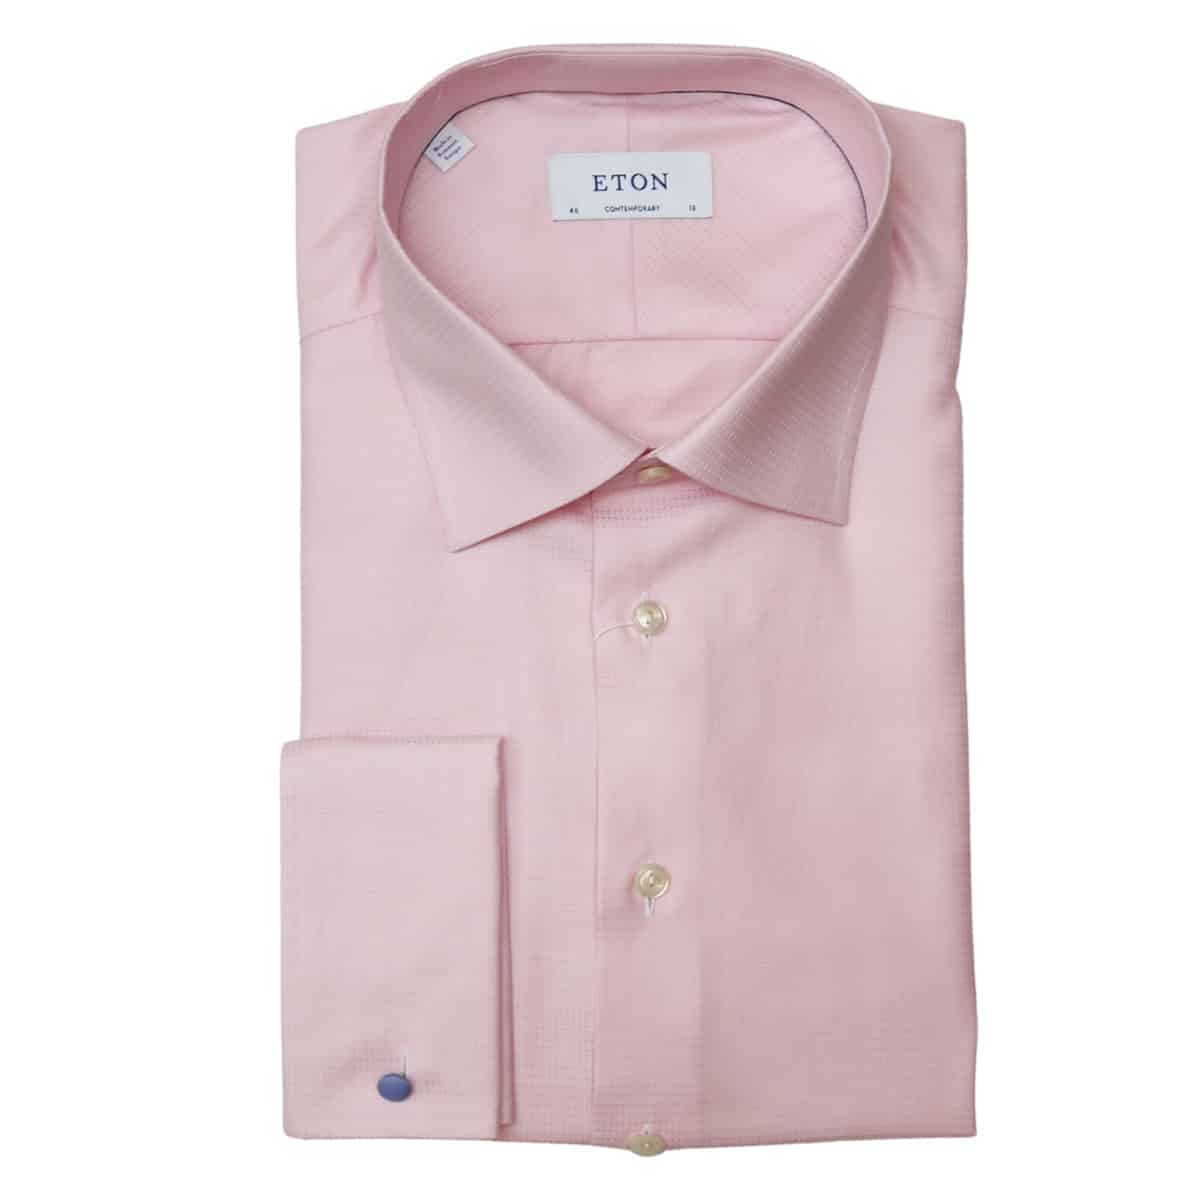 Eton Shirt Textured Twill French Cuff Pink | Menswear Online